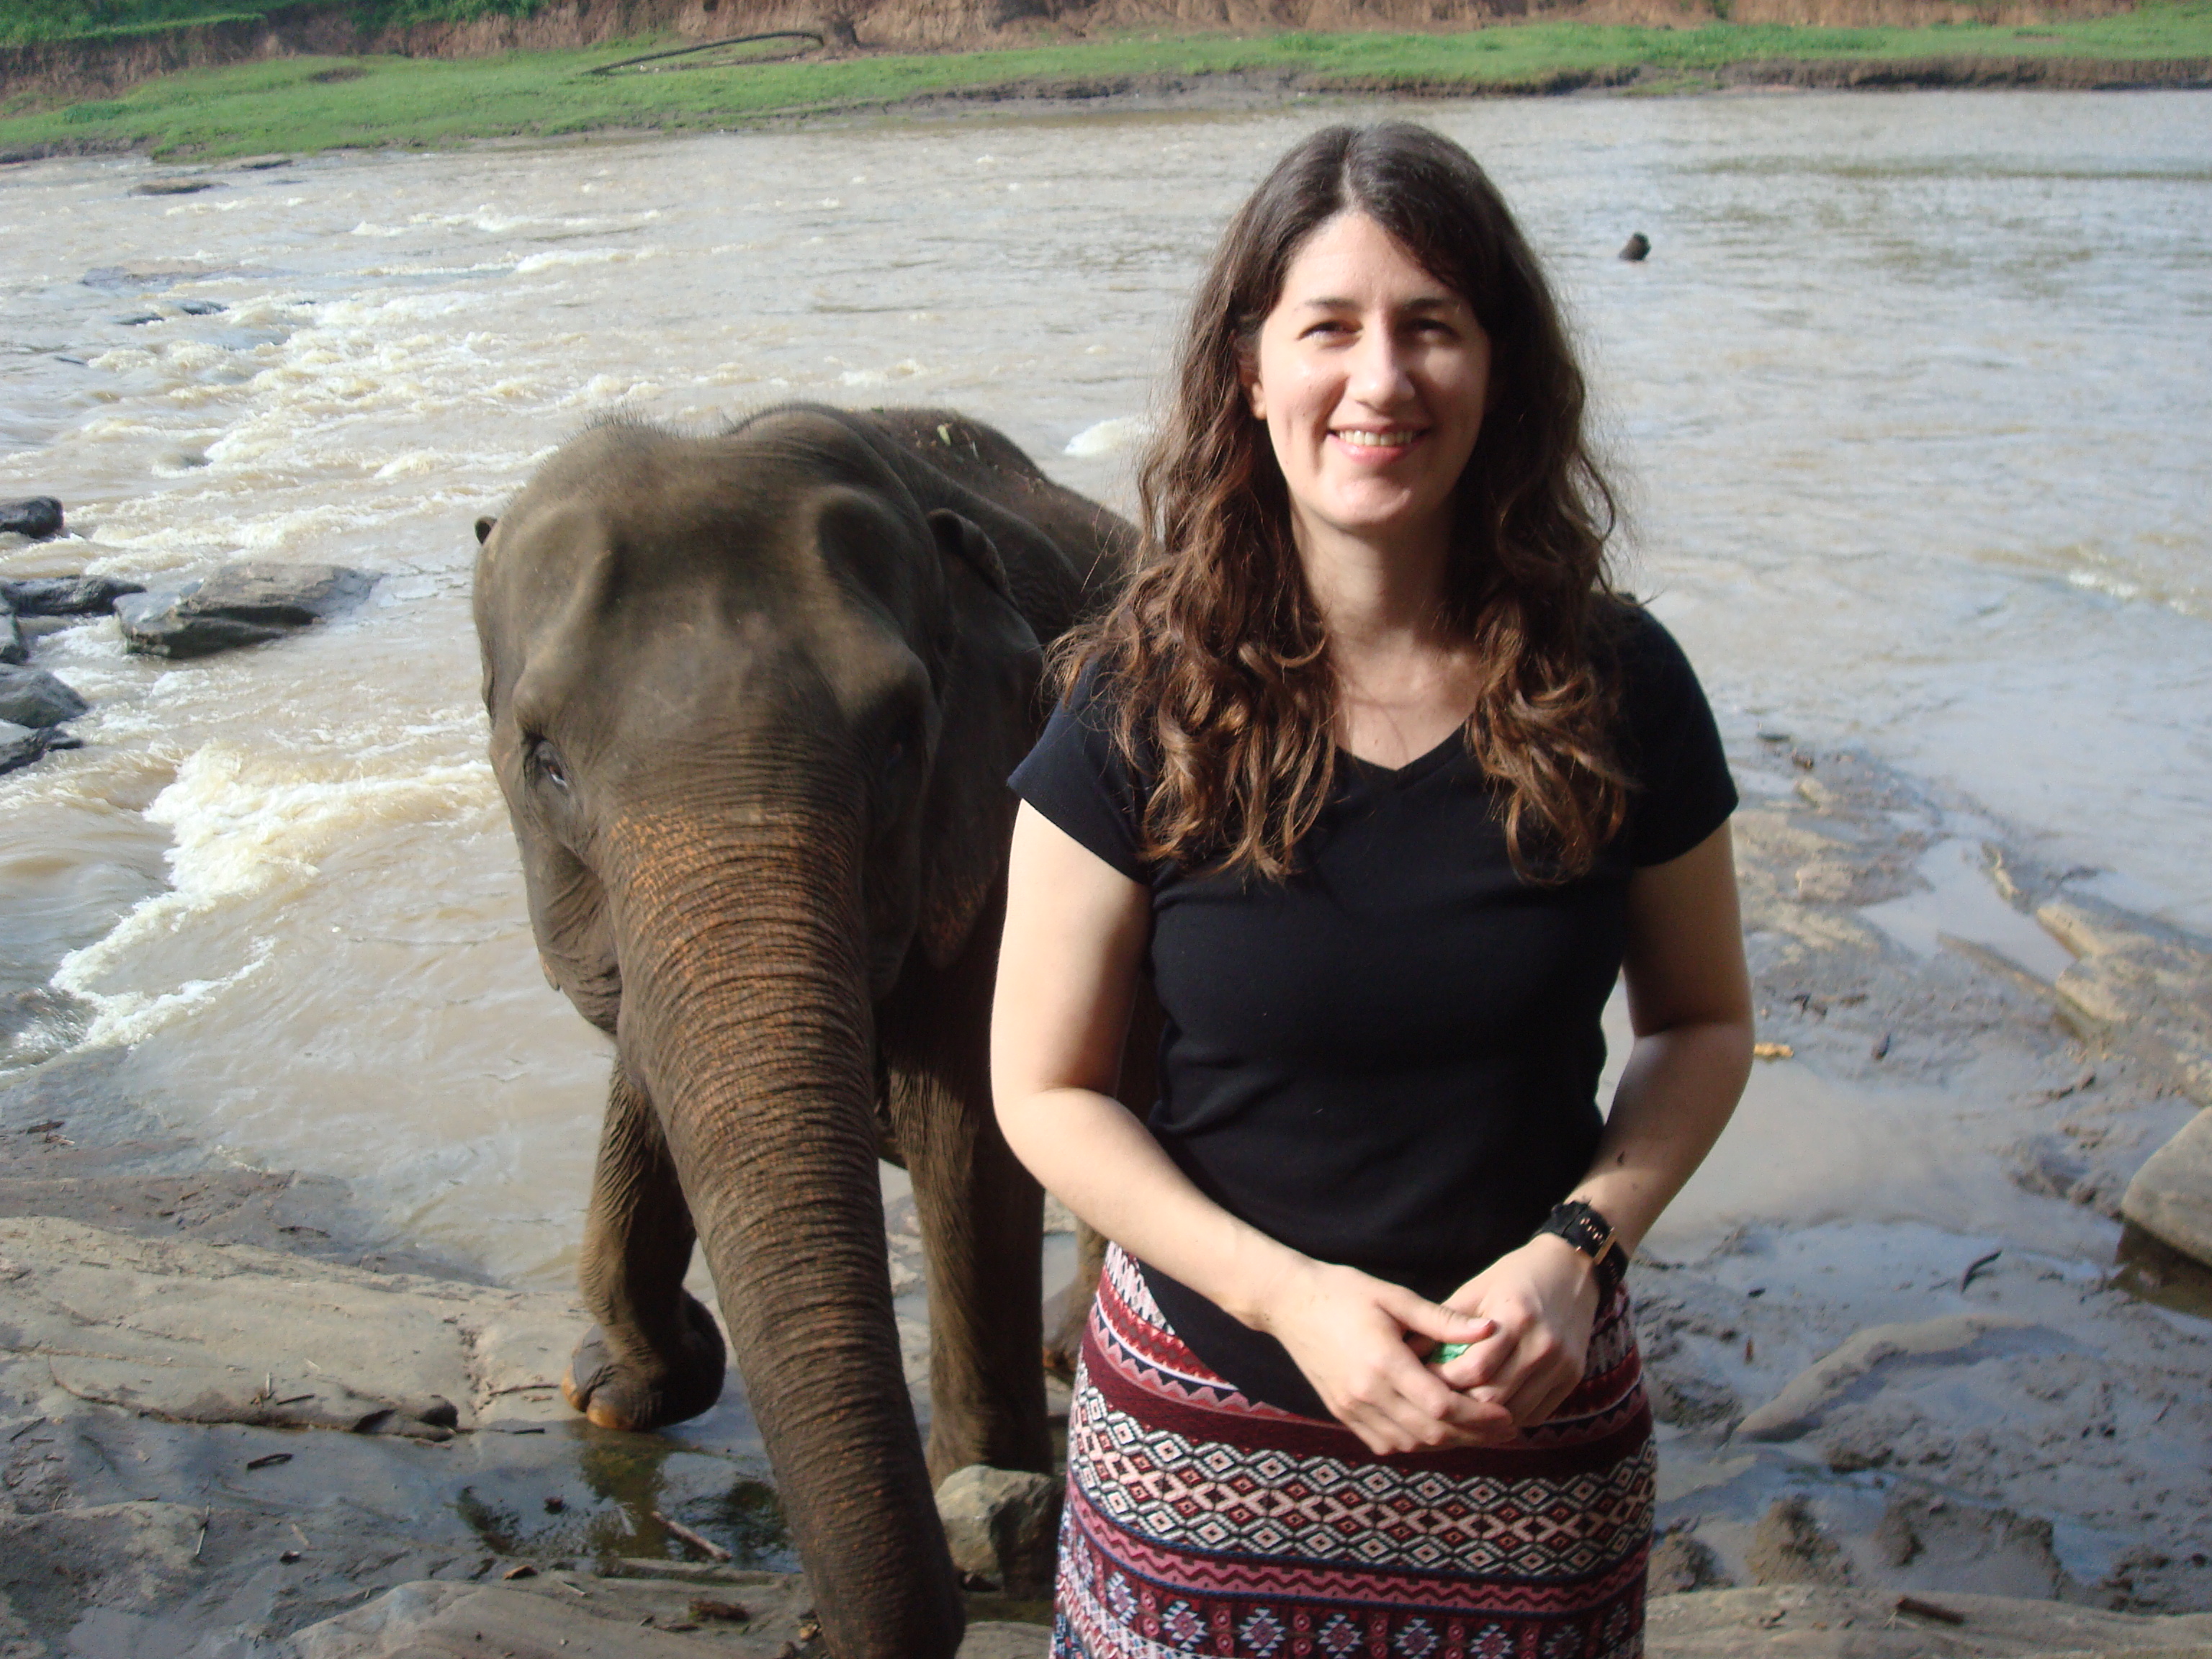 author Tamara with an elephant